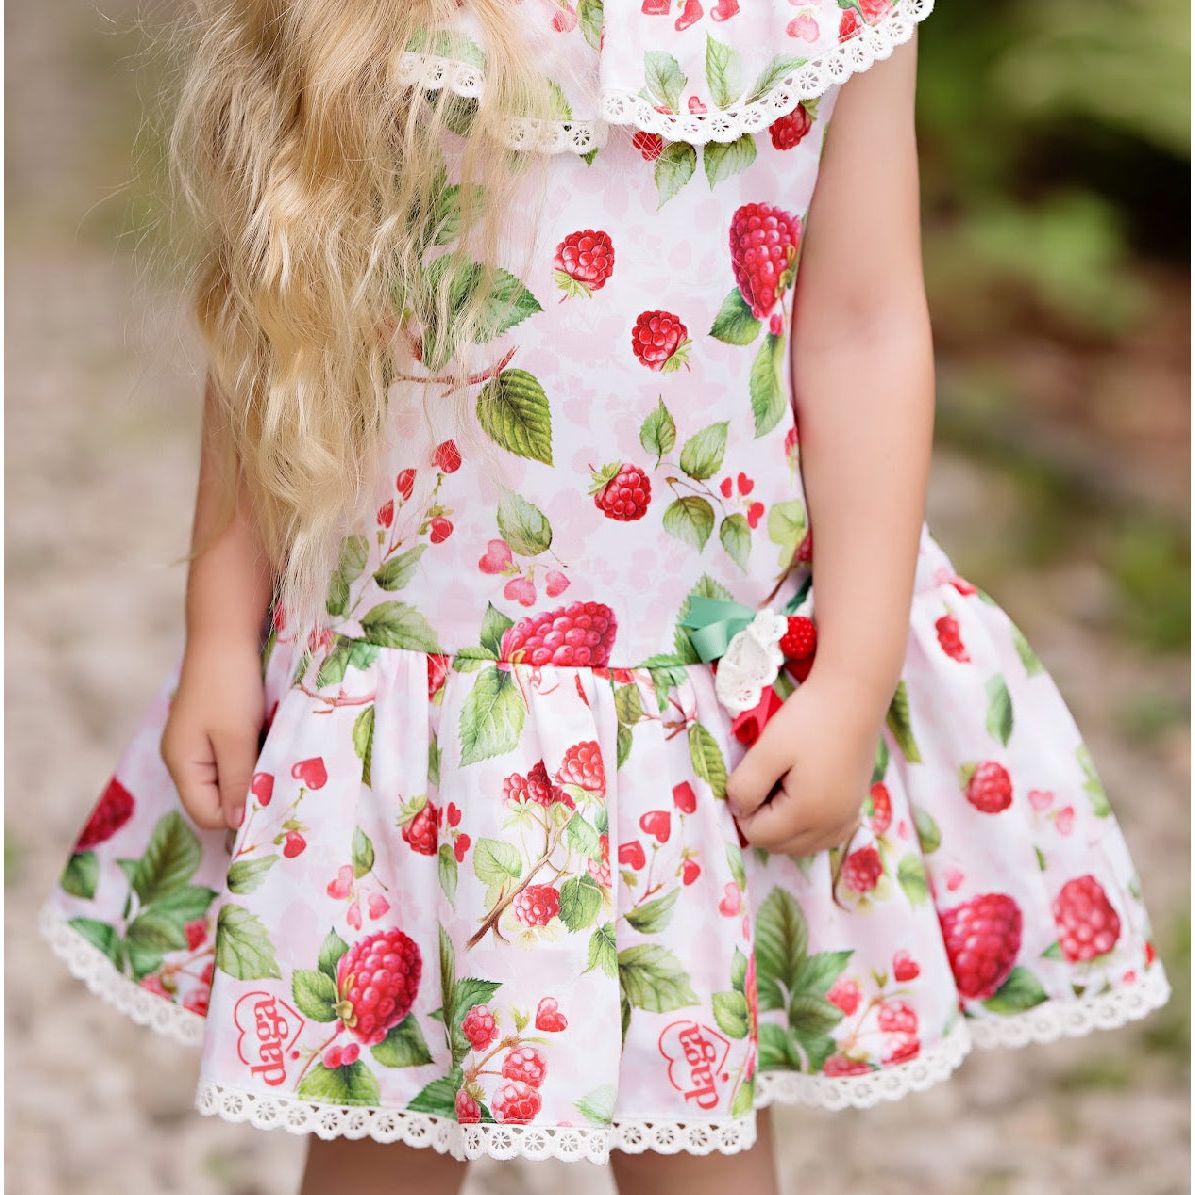 Juicy Strawberry Dress